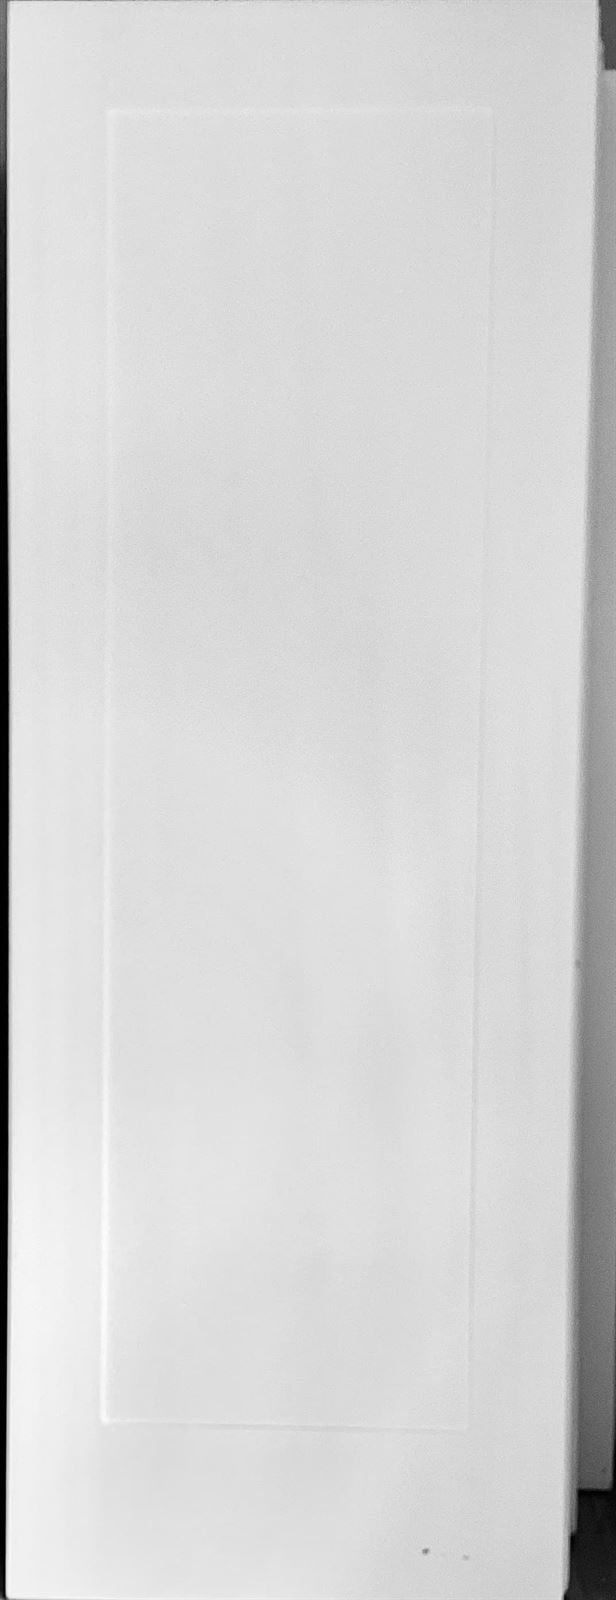 Puerta lacada blanca modelo 1 - Imagen 1